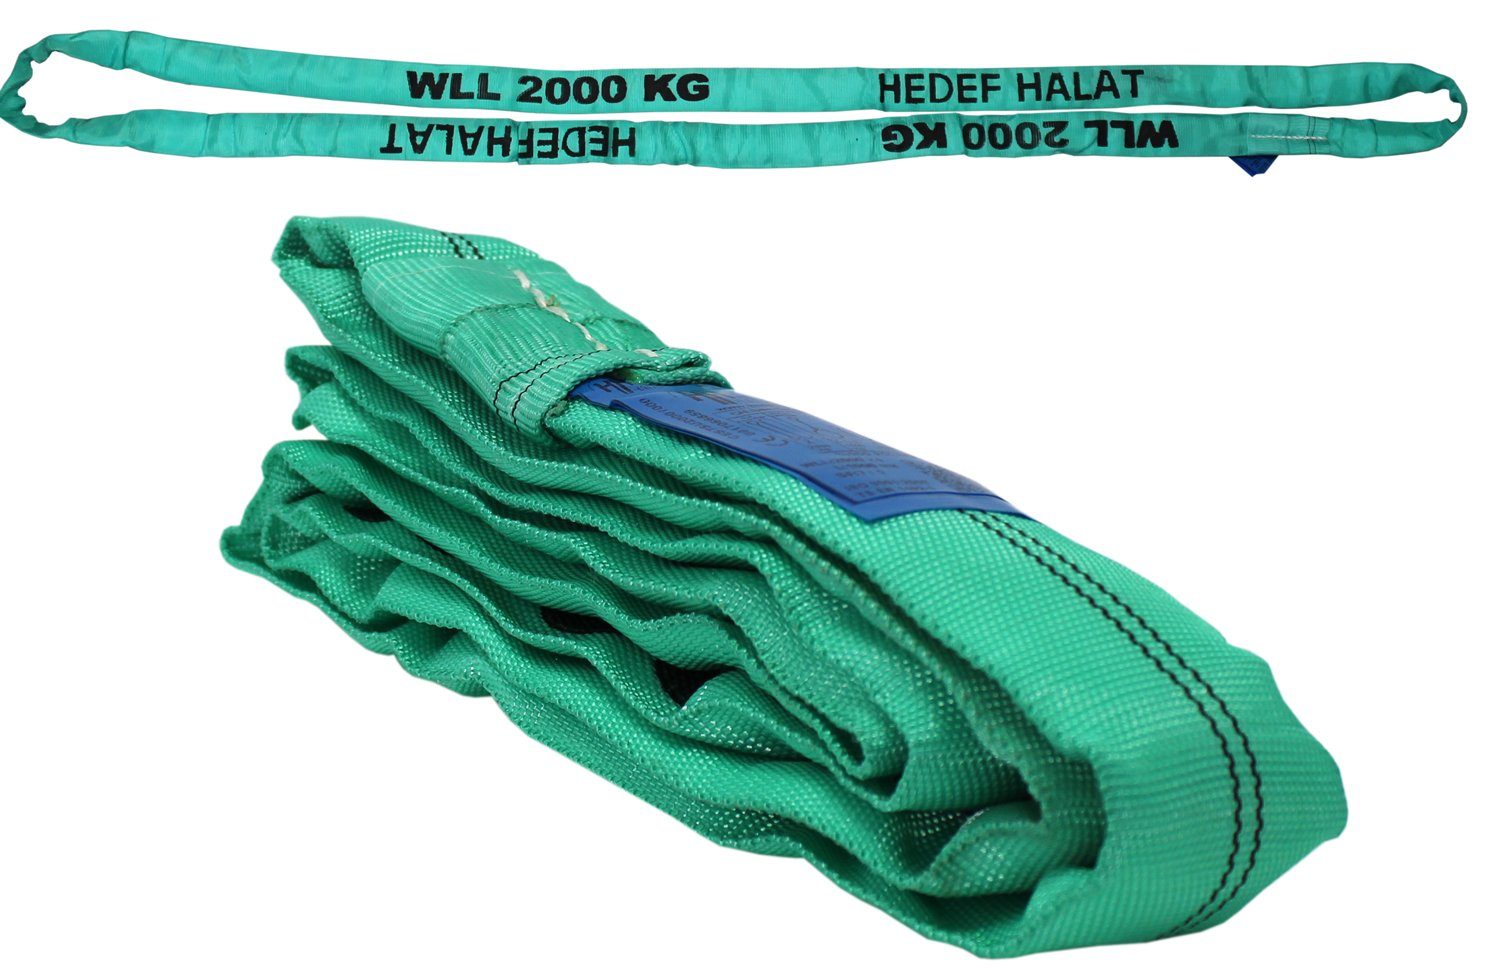 HEDEF HALAT Rundschlinge mit Einfachmantel 2 Tonnen 1 Meter SF: 7/1 DIN EN 1492-2 Hebeband, Rundschlingen Bandschlinge Hebegurt 1 Meter (umfang 2 m)